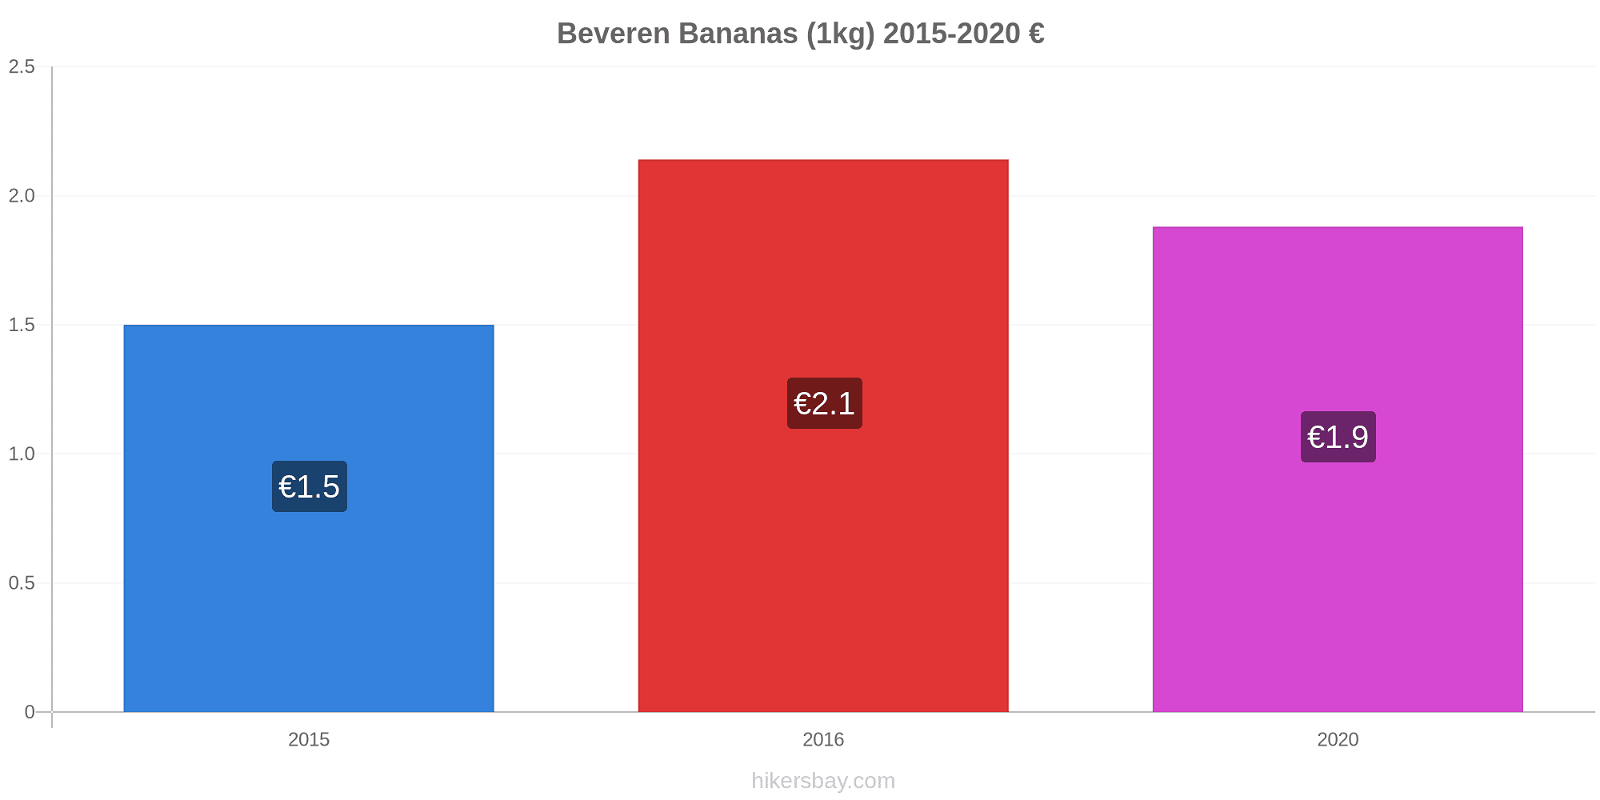 Beveren price changes Bananas (1kg) hikersbay.com